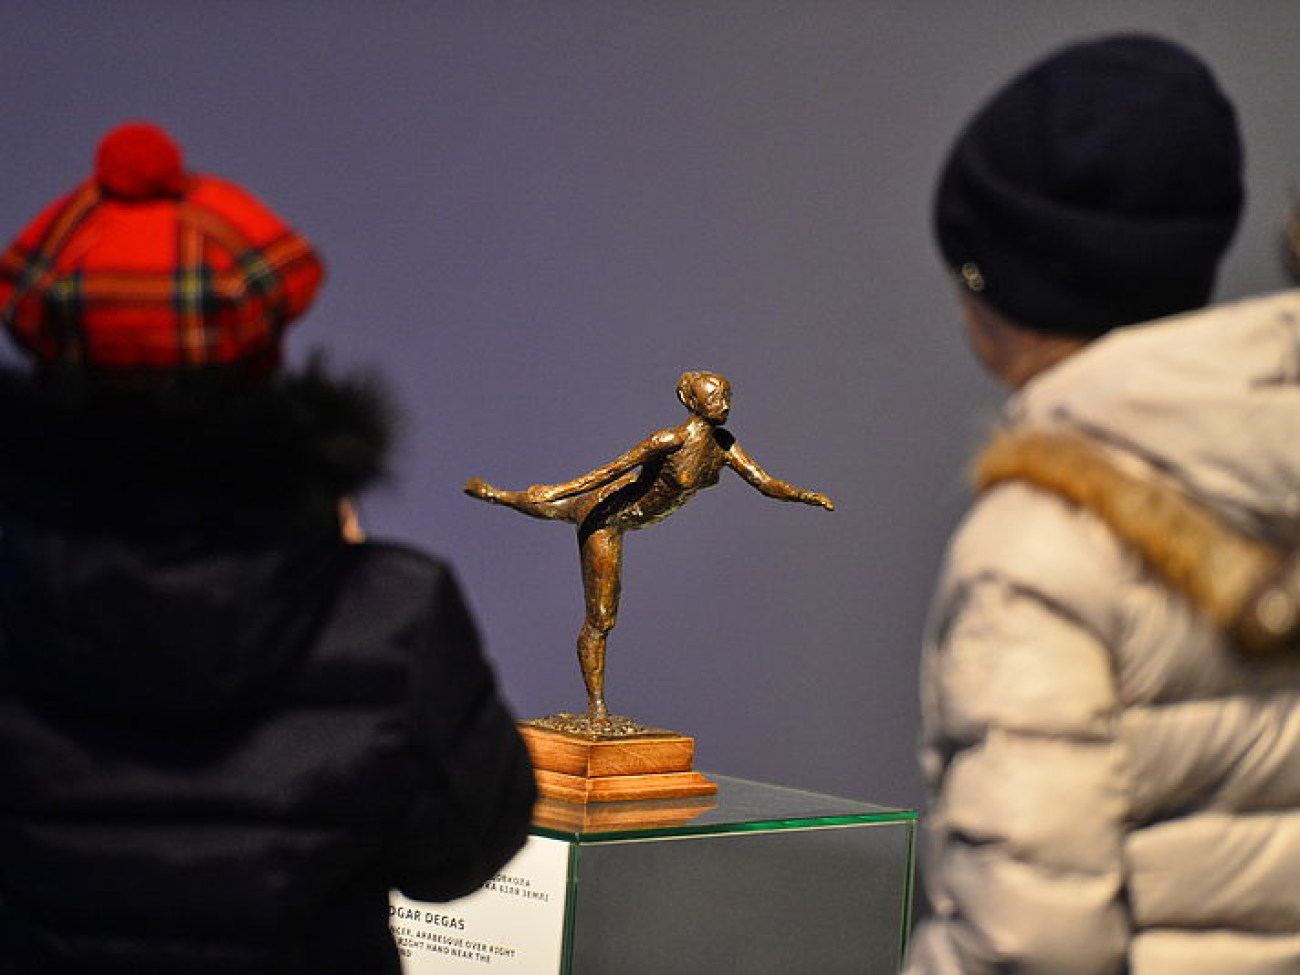 В Киеве проходит выставка шедевров мировой скульптуры